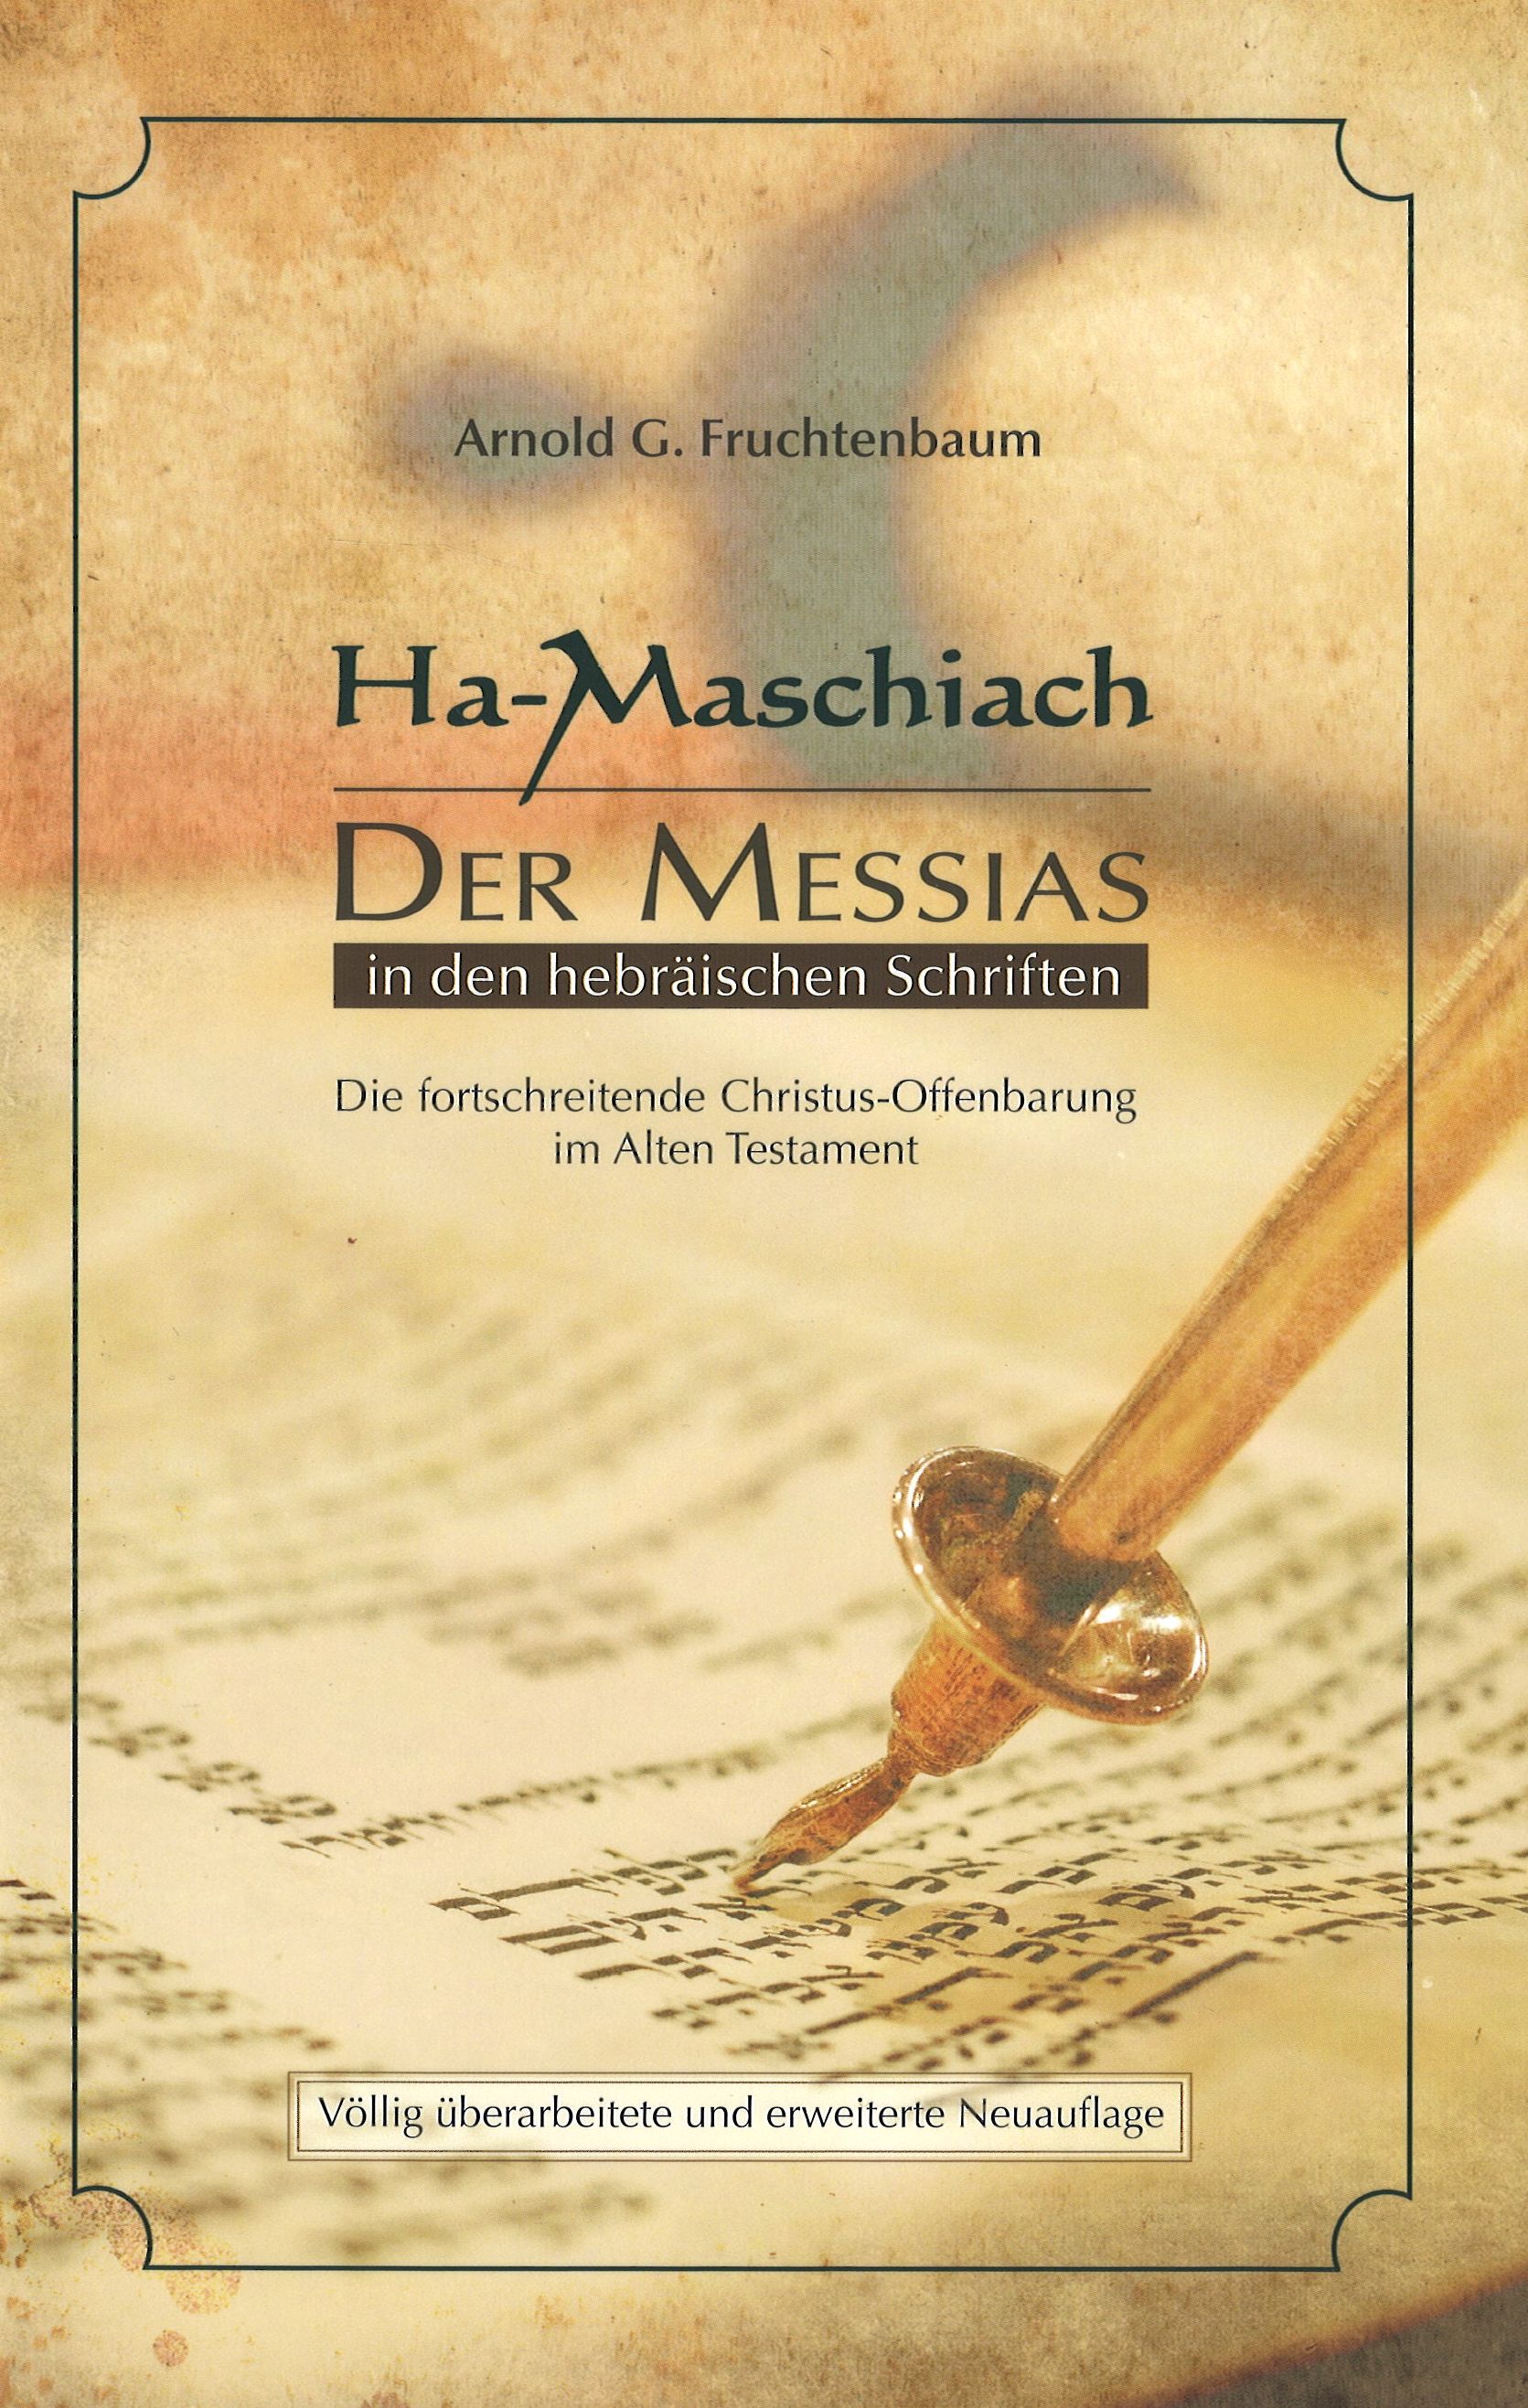 Ha-Maschiach - Der Messias